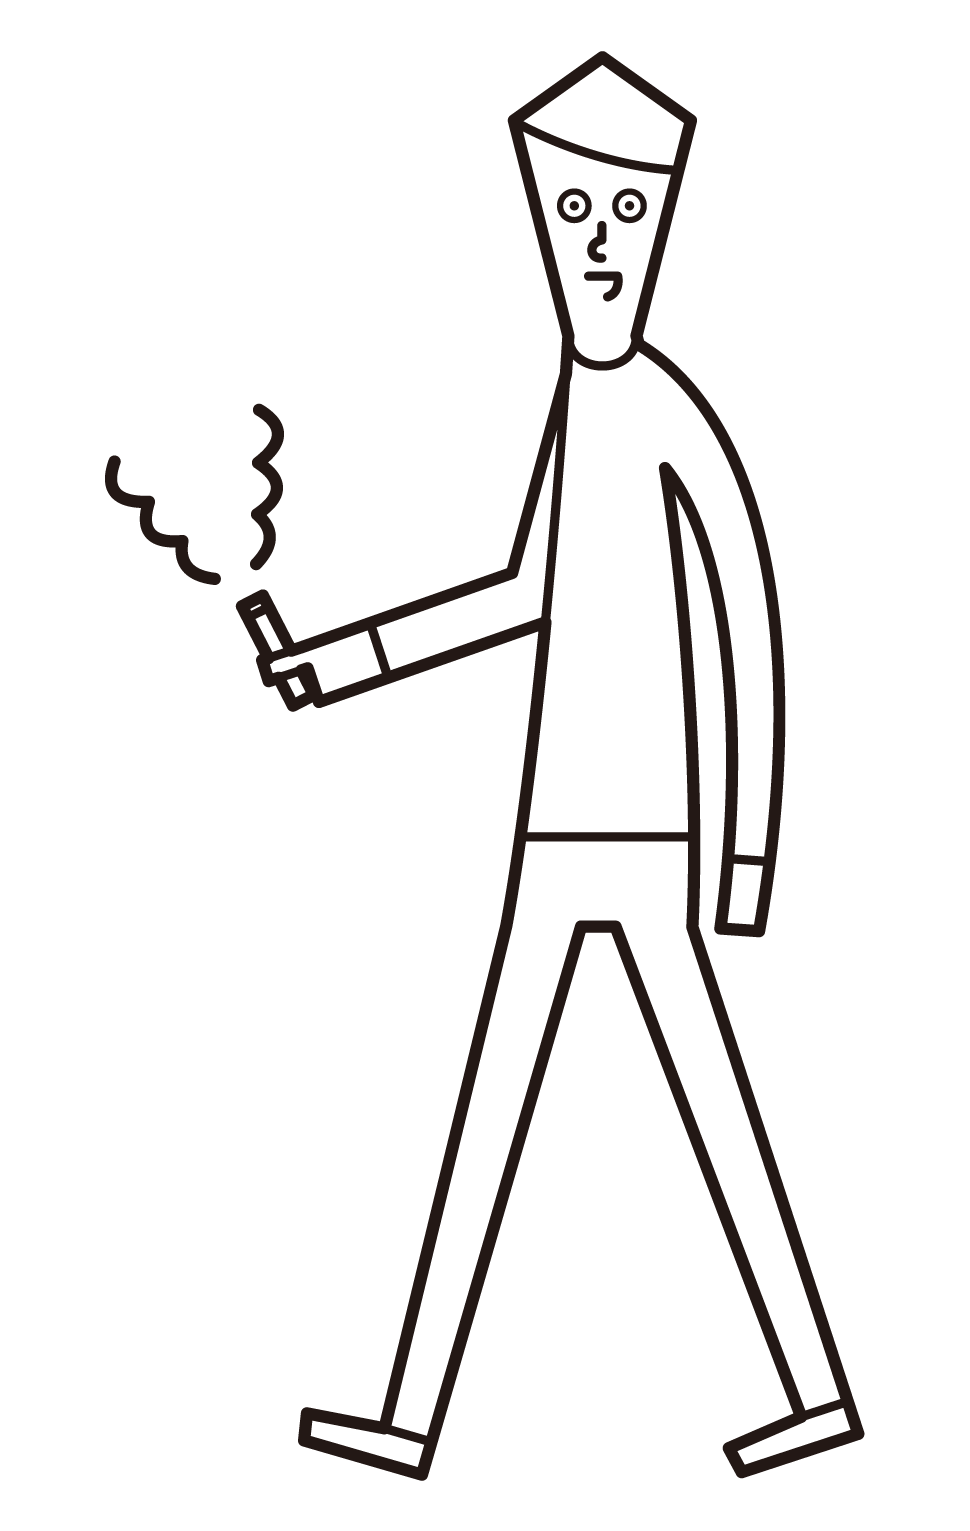 걸을 때 담배를 피우는 사람(남성)의 일러스트